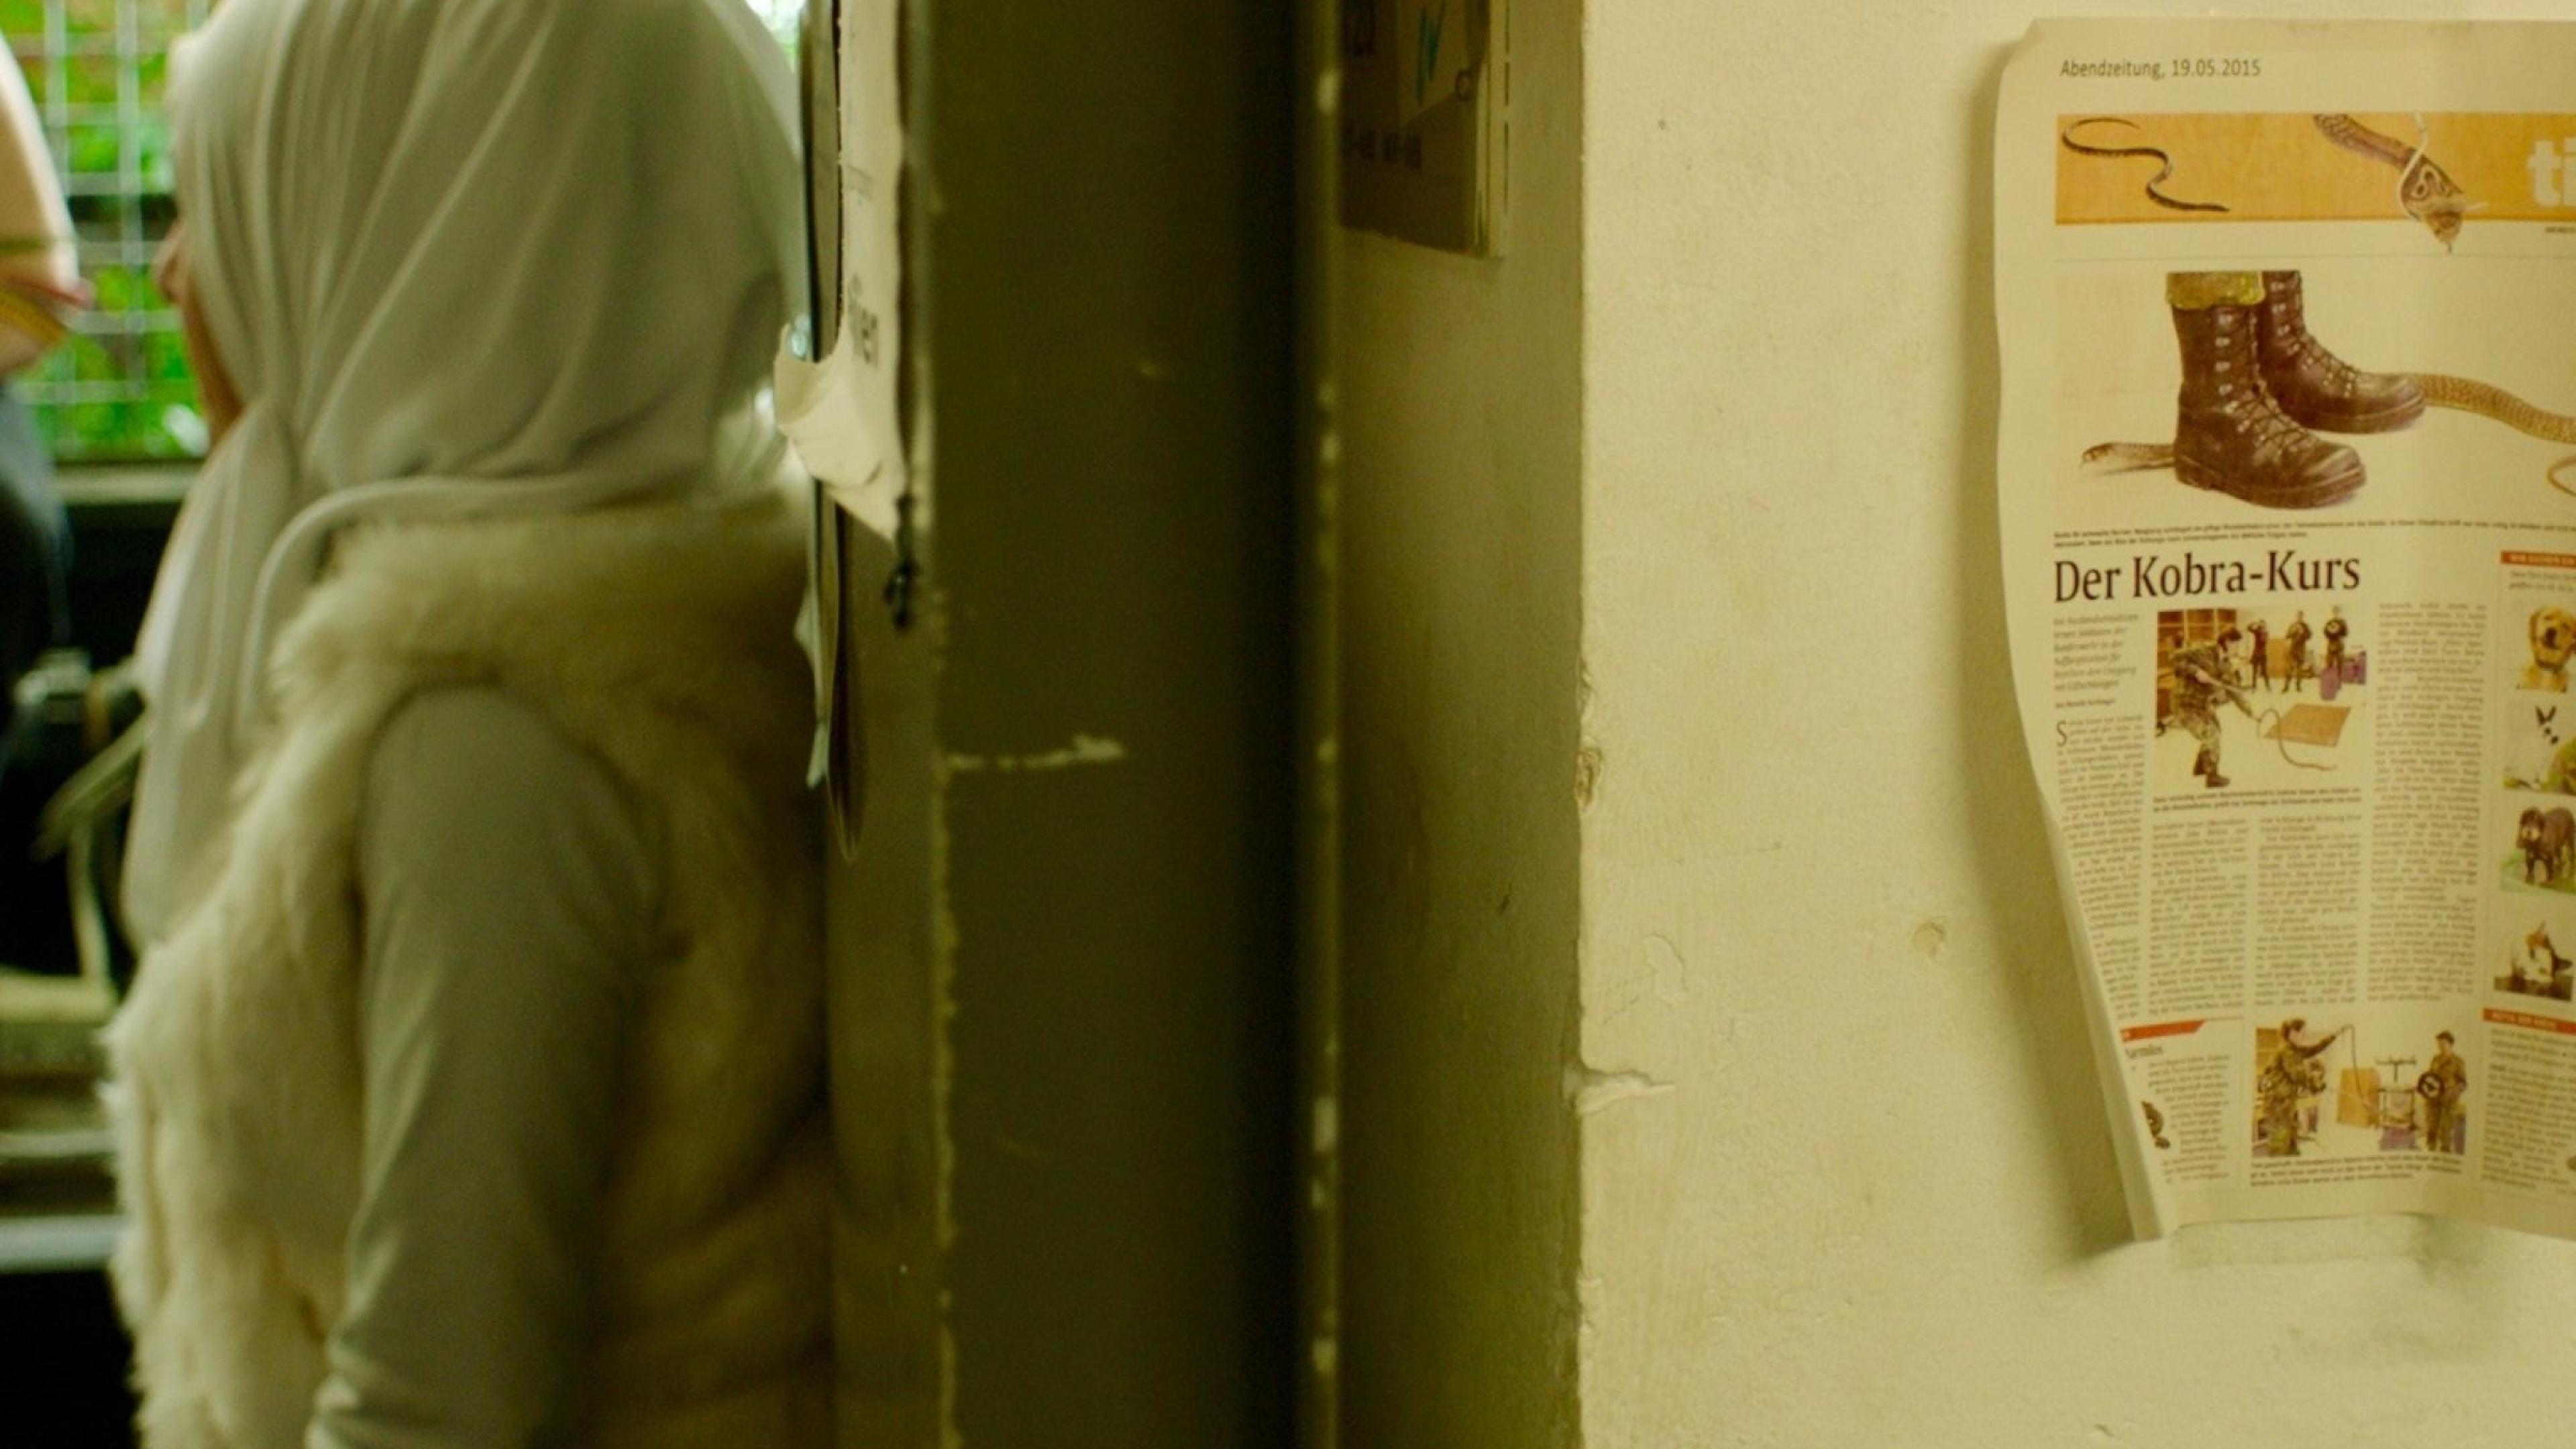 Eine Frau mit Kopftuch lehnt an einer Wand in einem Flur. Neben ihr hängt ein Zeitungsausschnitt über einen Kobra-Kurs.